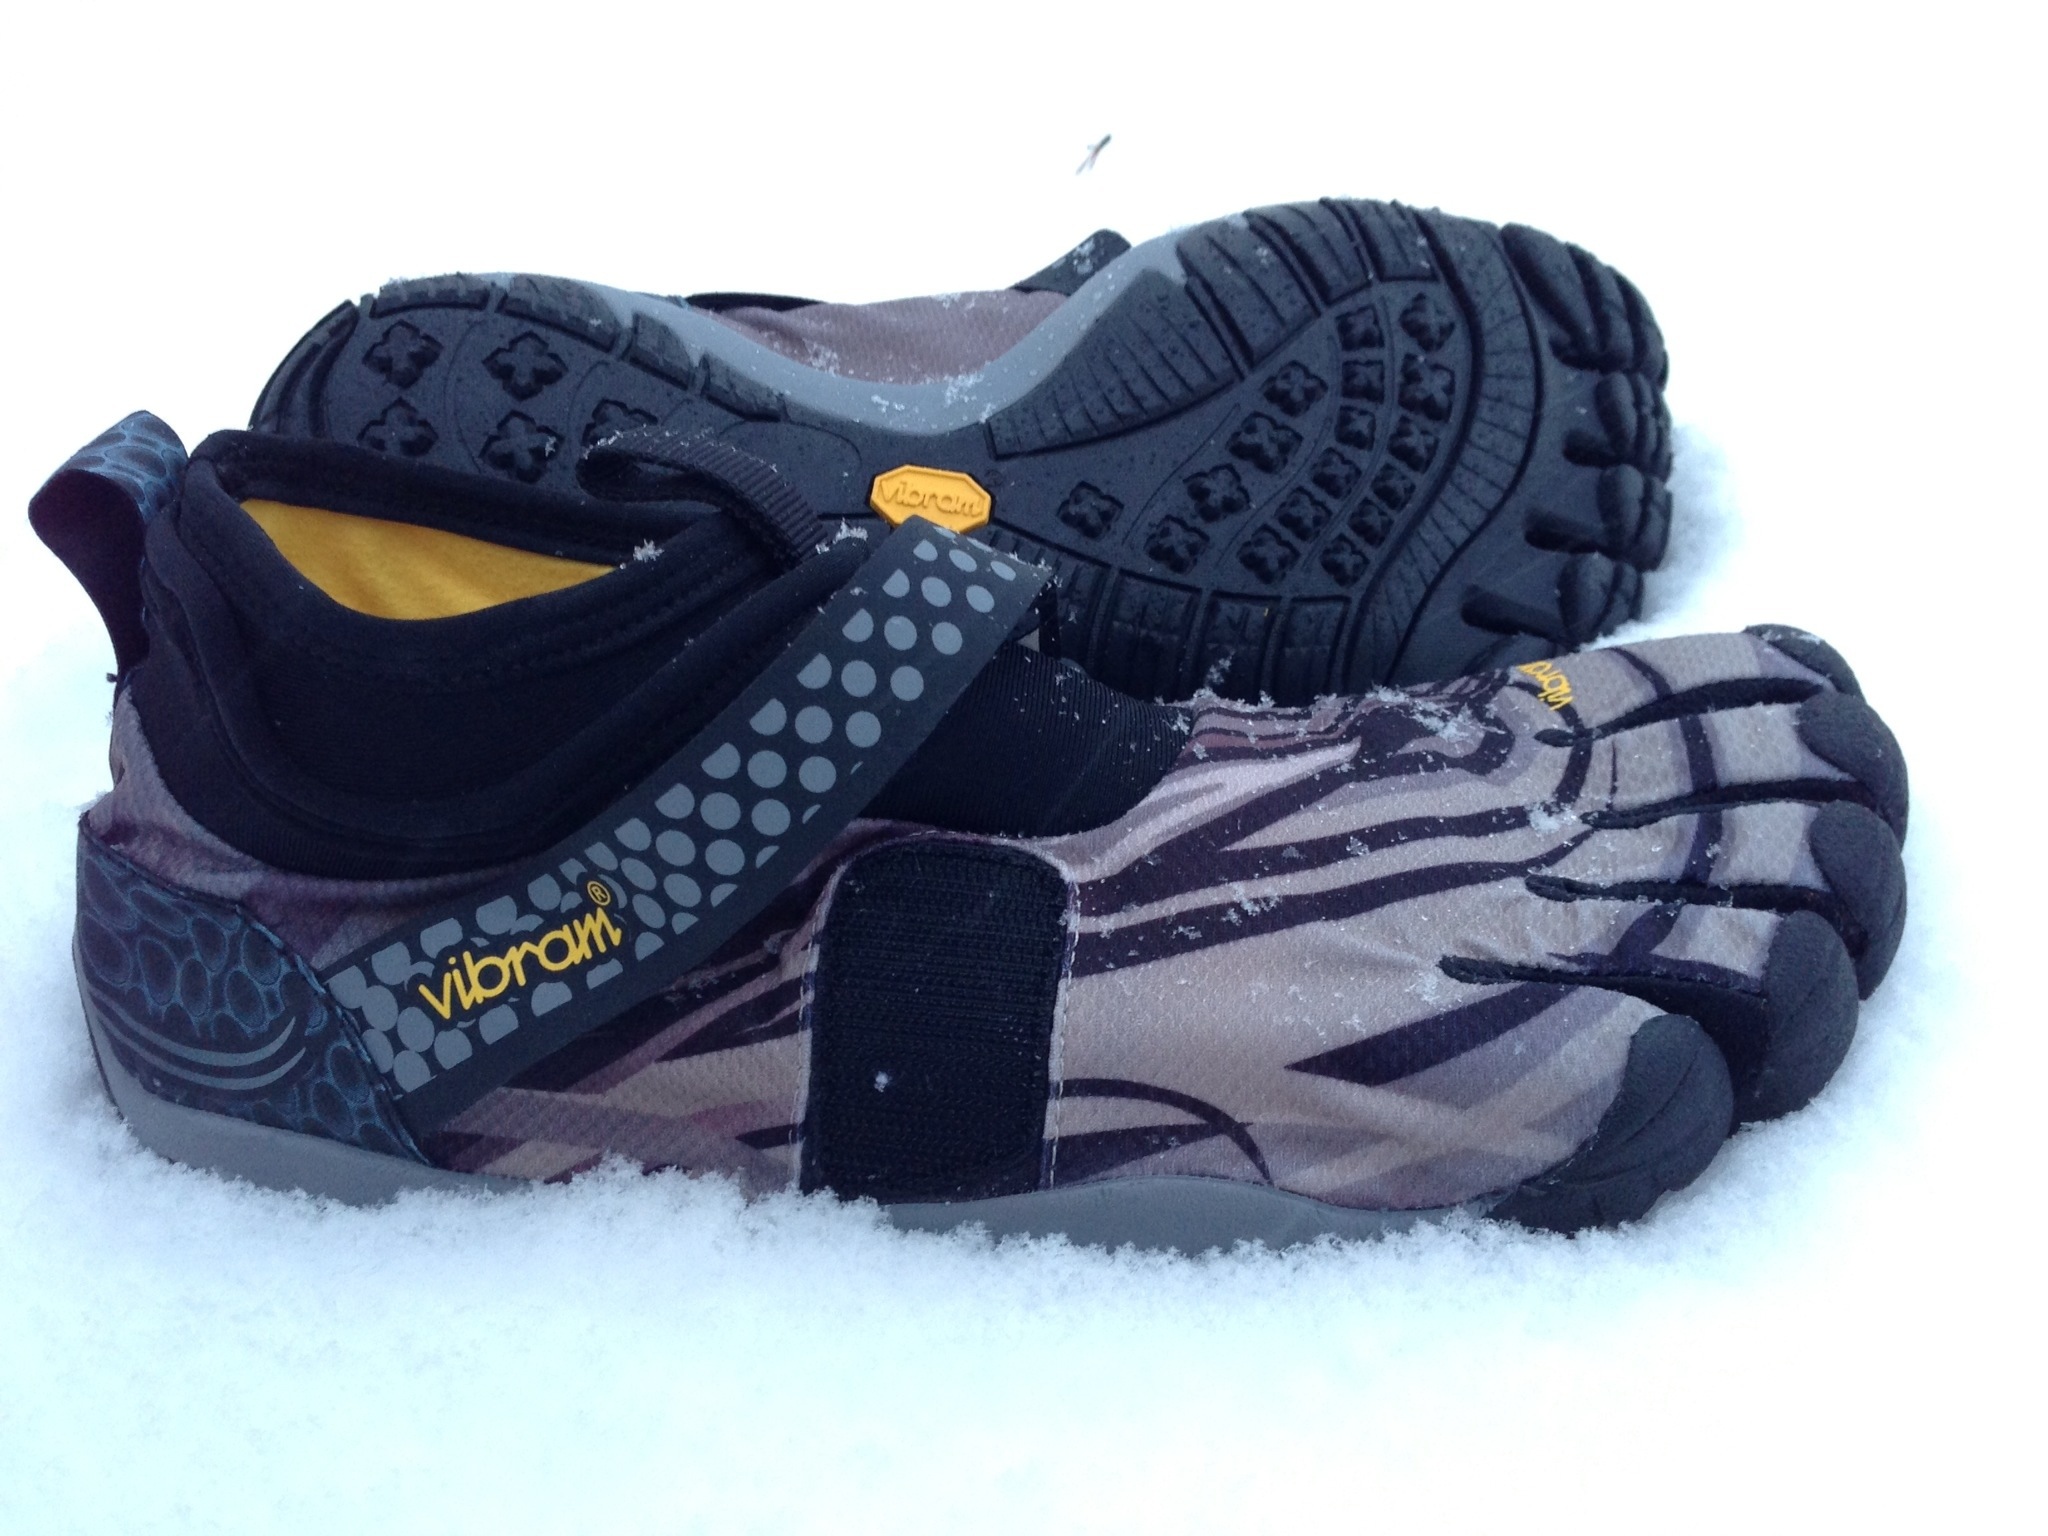 Footpad elasticitet Certifikat Vibram FiveFingers Lontra Shoe Review - Dr. Nick's Running Blog